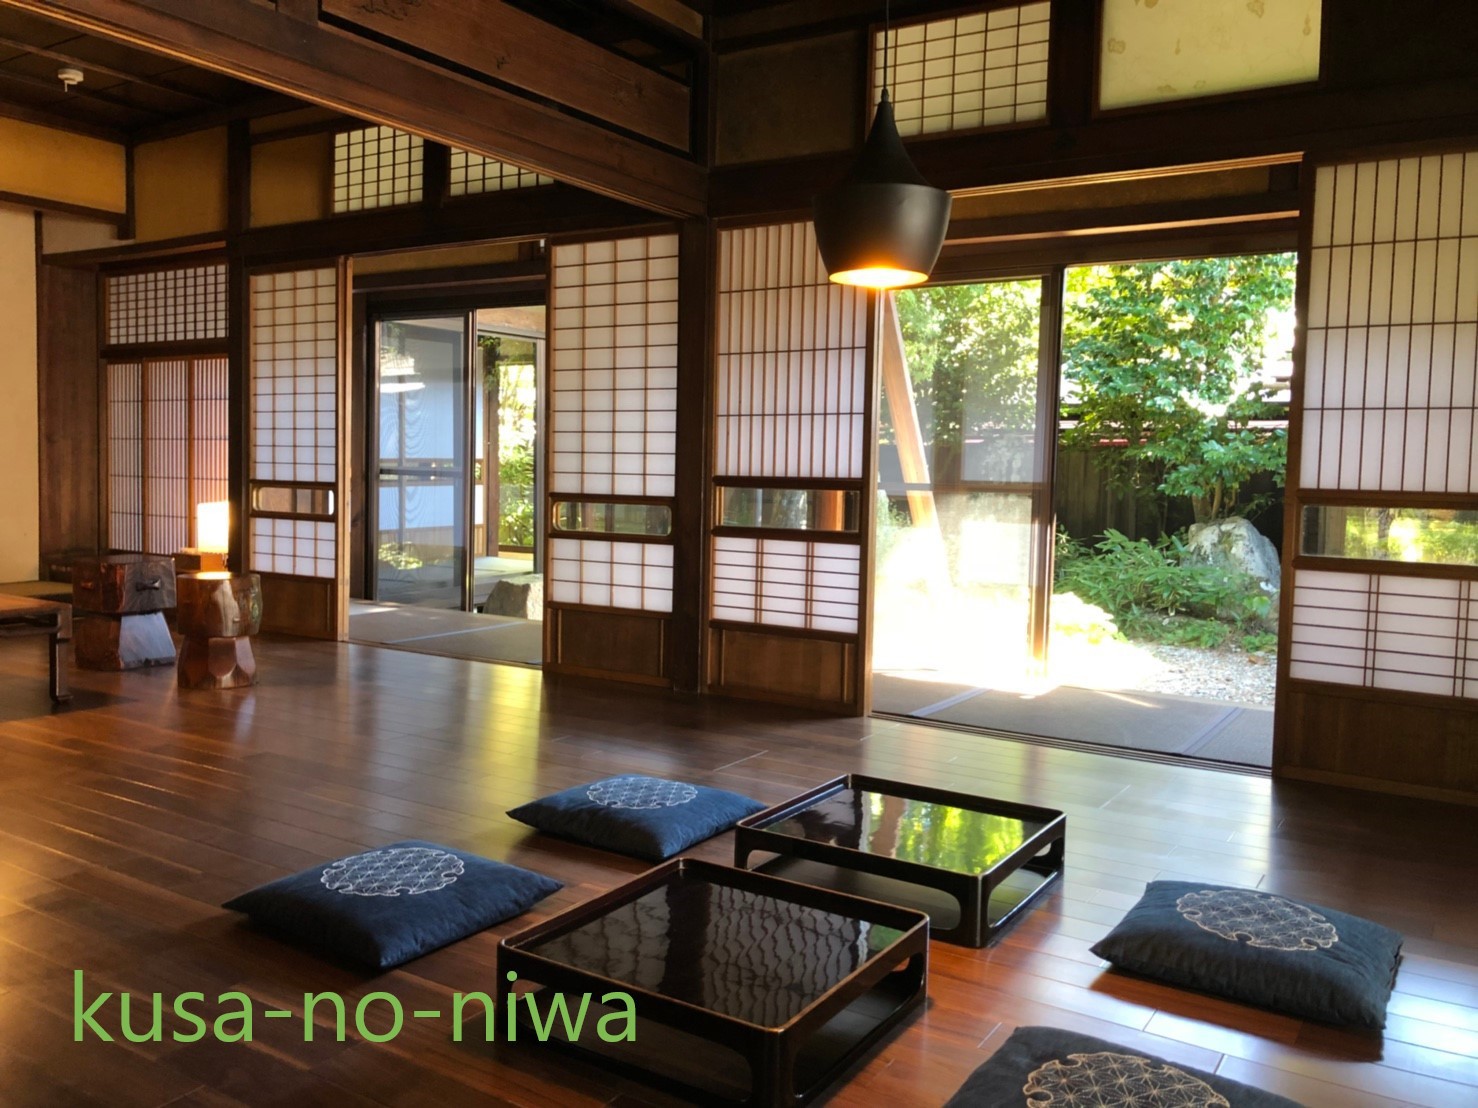 Kusa no Niwa in the Heart of Takayama, Japan: Reviews on Kusa no Niwa